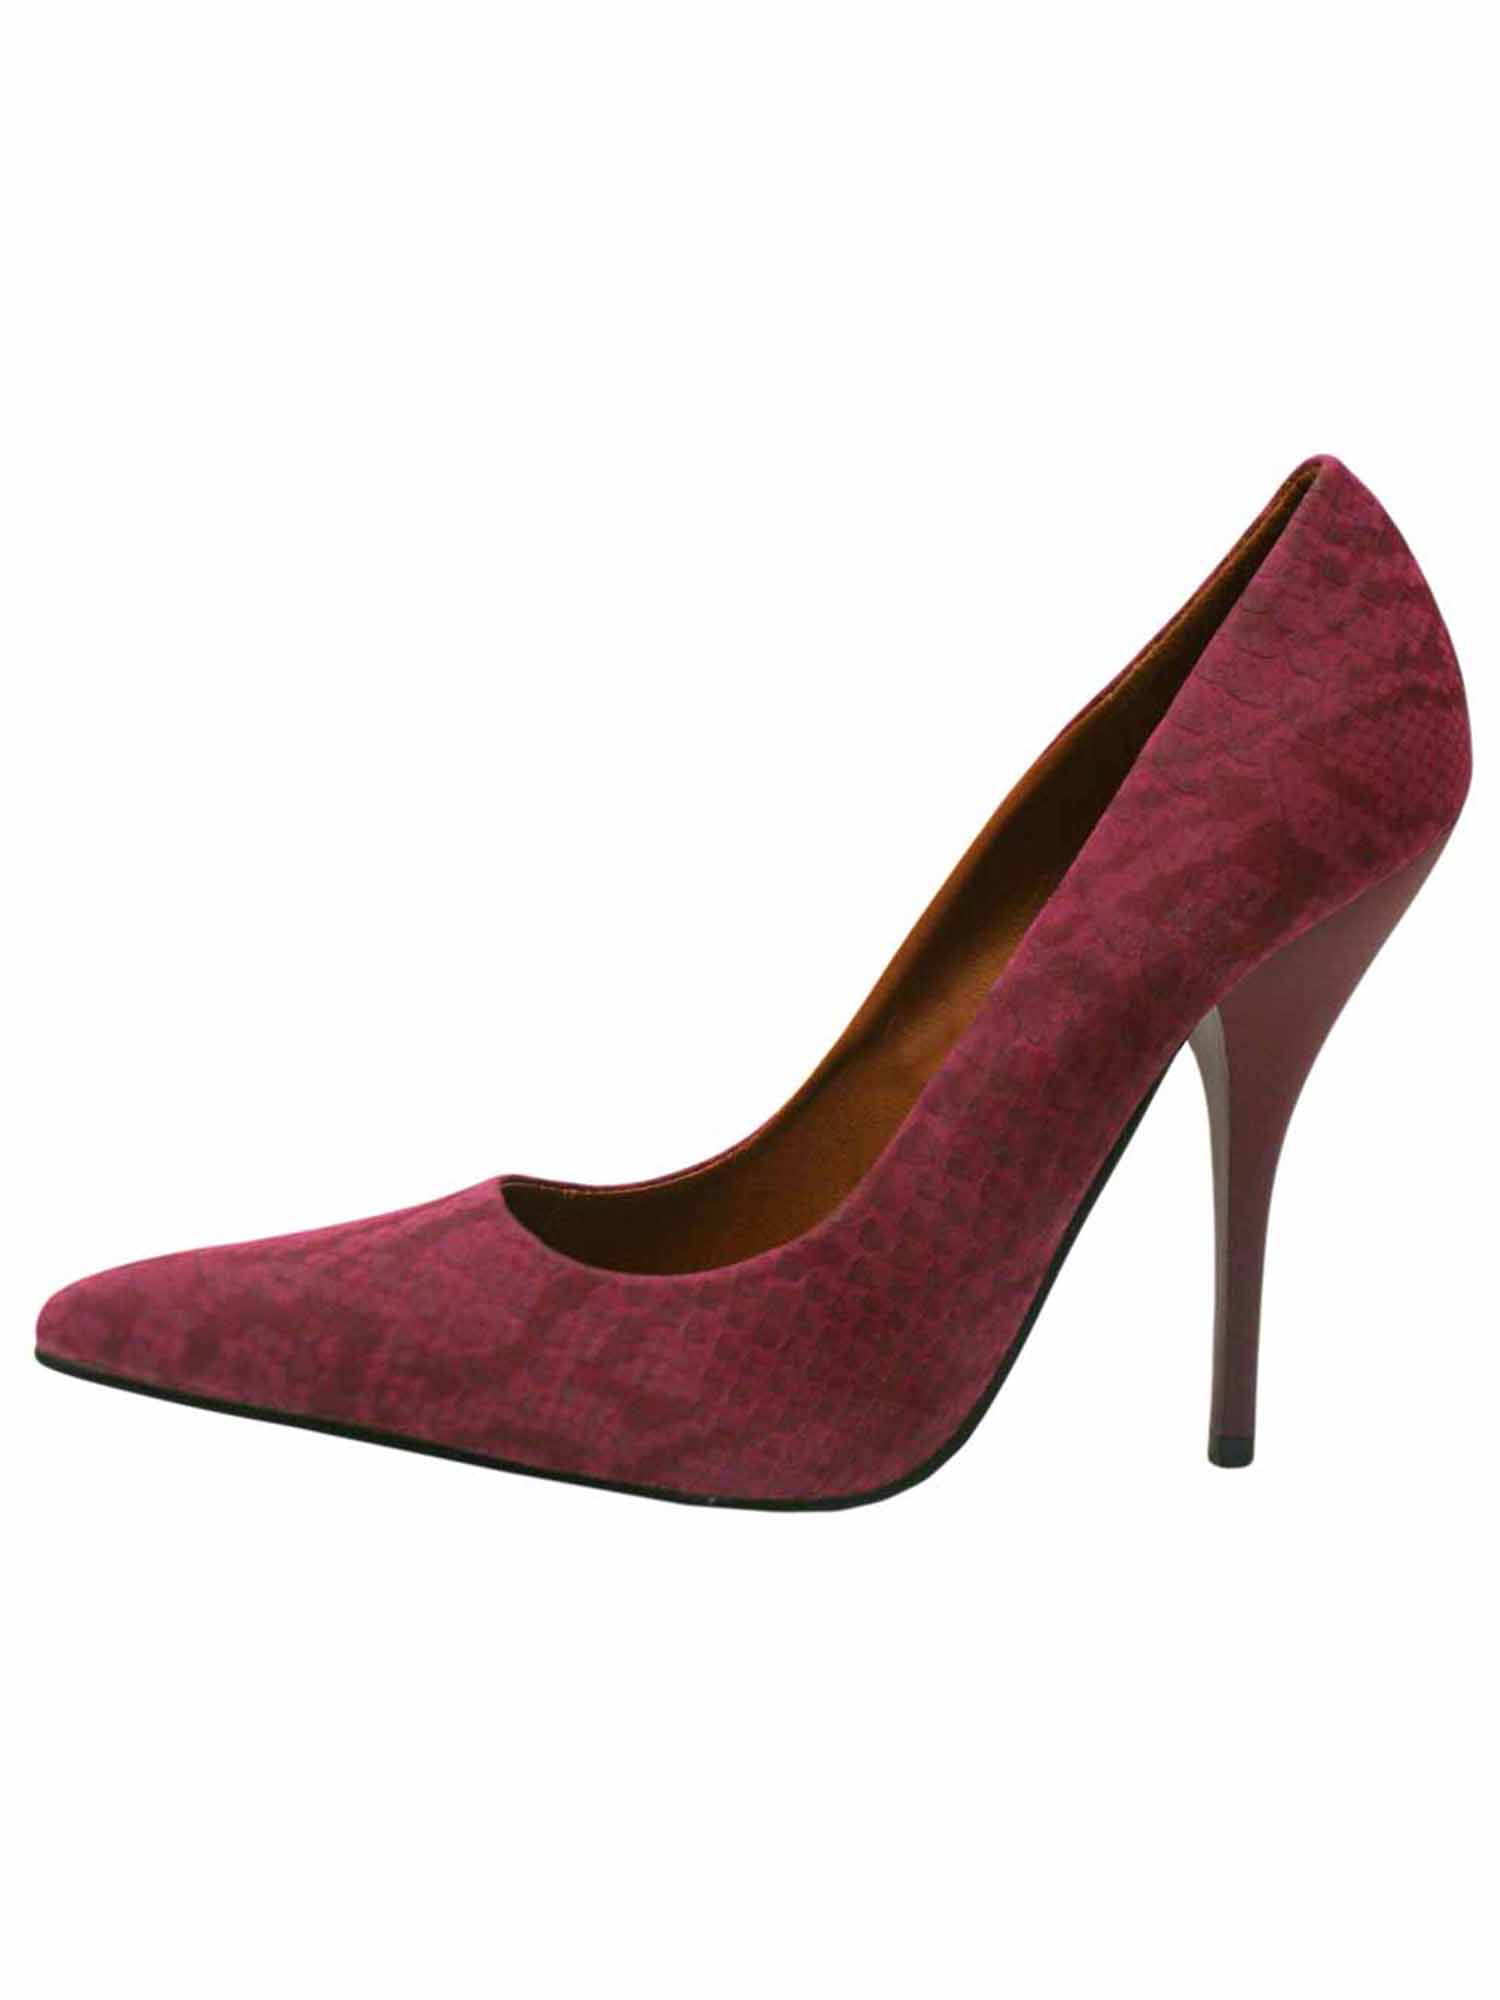 boutique 9 super high heels leather pink magenta color size 6.5 | eBay